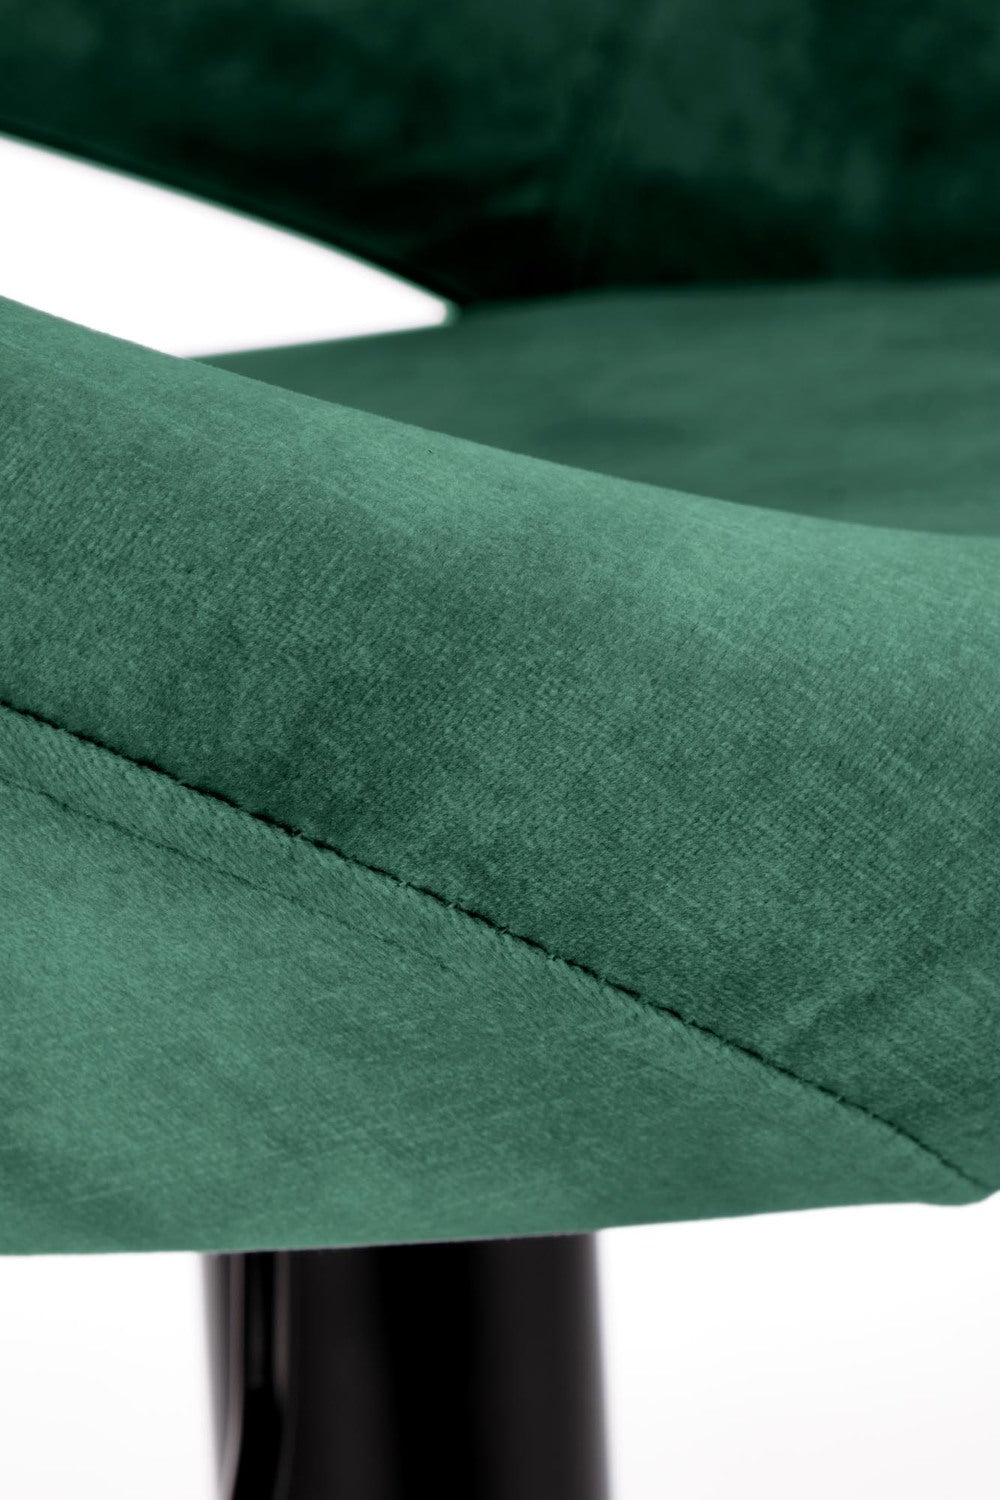 JY krēsls tumši zaļs 78-100/53/48/62-84 cm - N1 Home